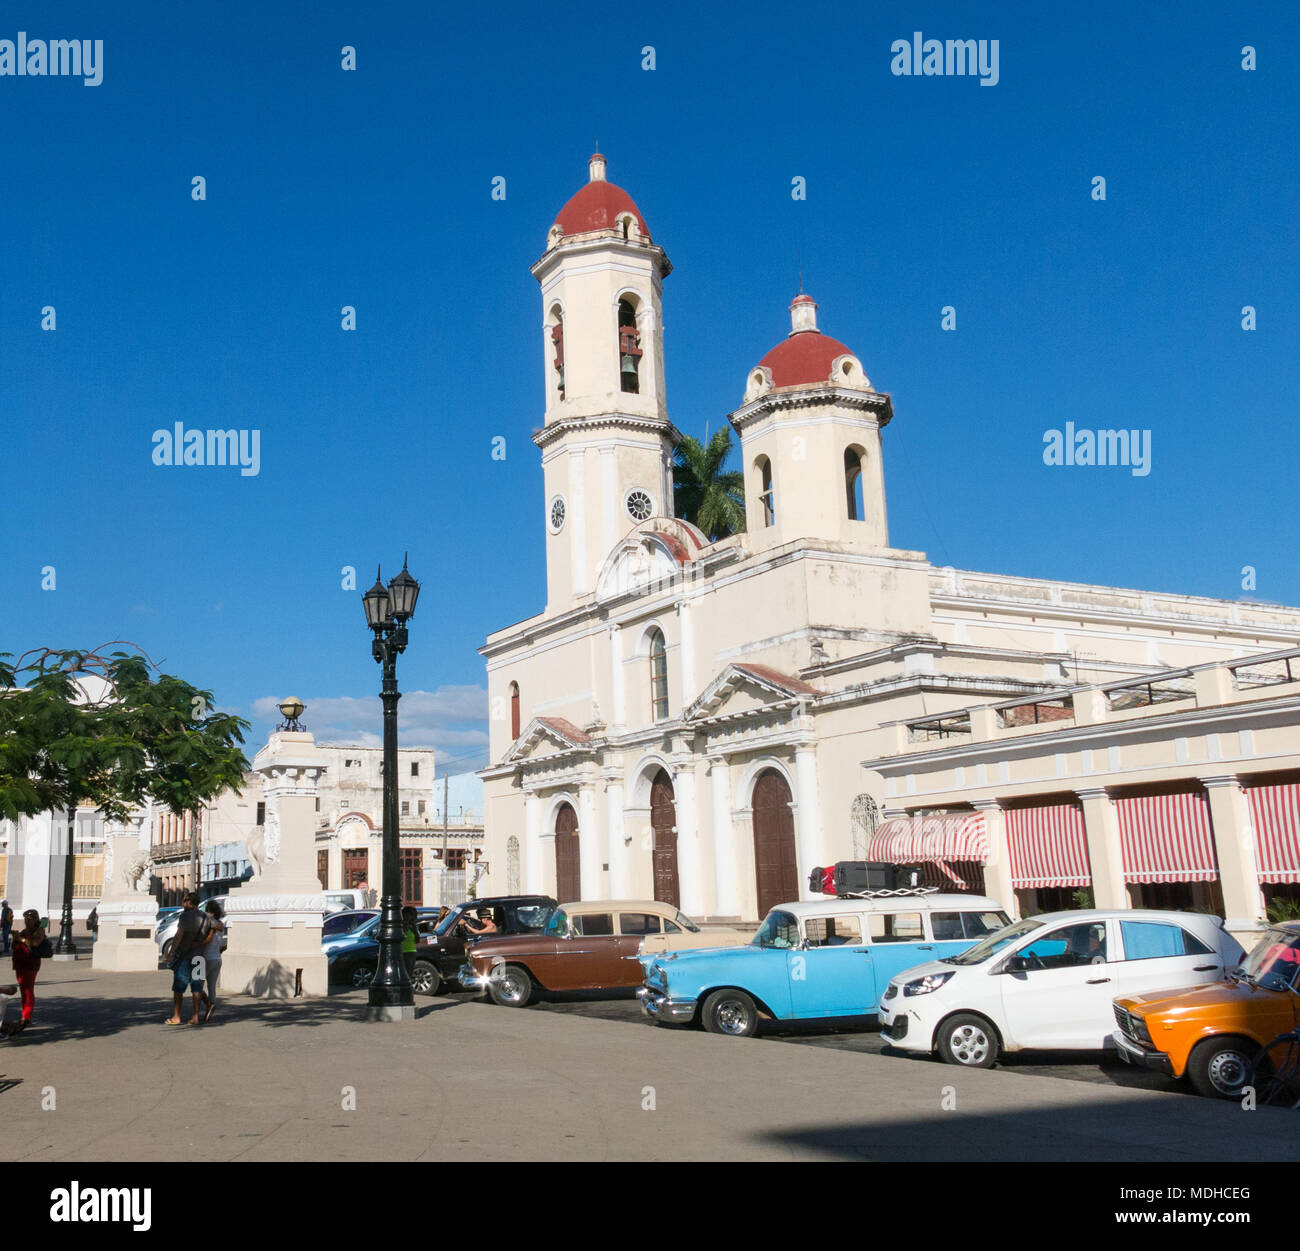 CIENFUEGOS, CUBA - 3 janvier 2017 : voitures anciennes à Jose Marti Park, la place principale de Cienfuegos, en face de la Purisima Concepcion cathédrale. Cie Banque D'Images